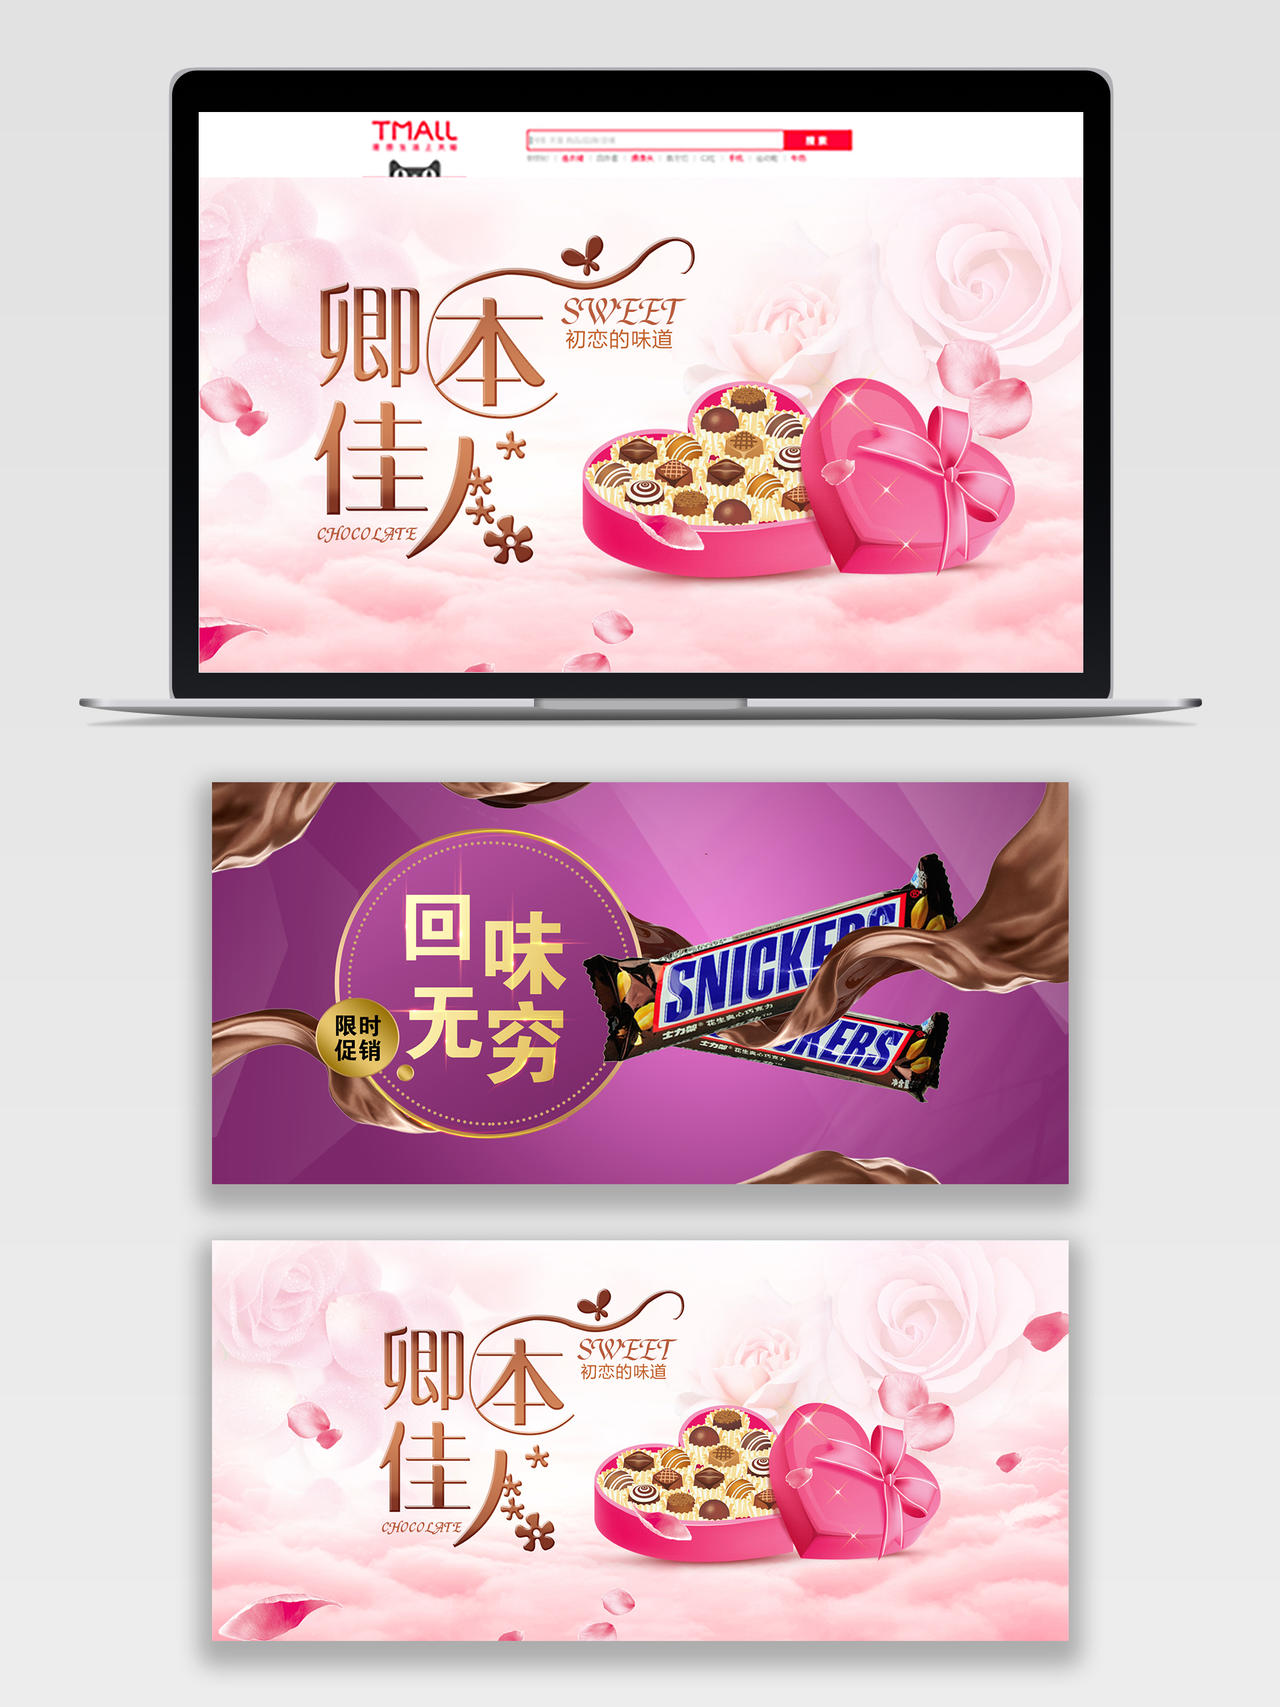 粉色温馨紫色浪漫巧克力礼盒电商促销banner